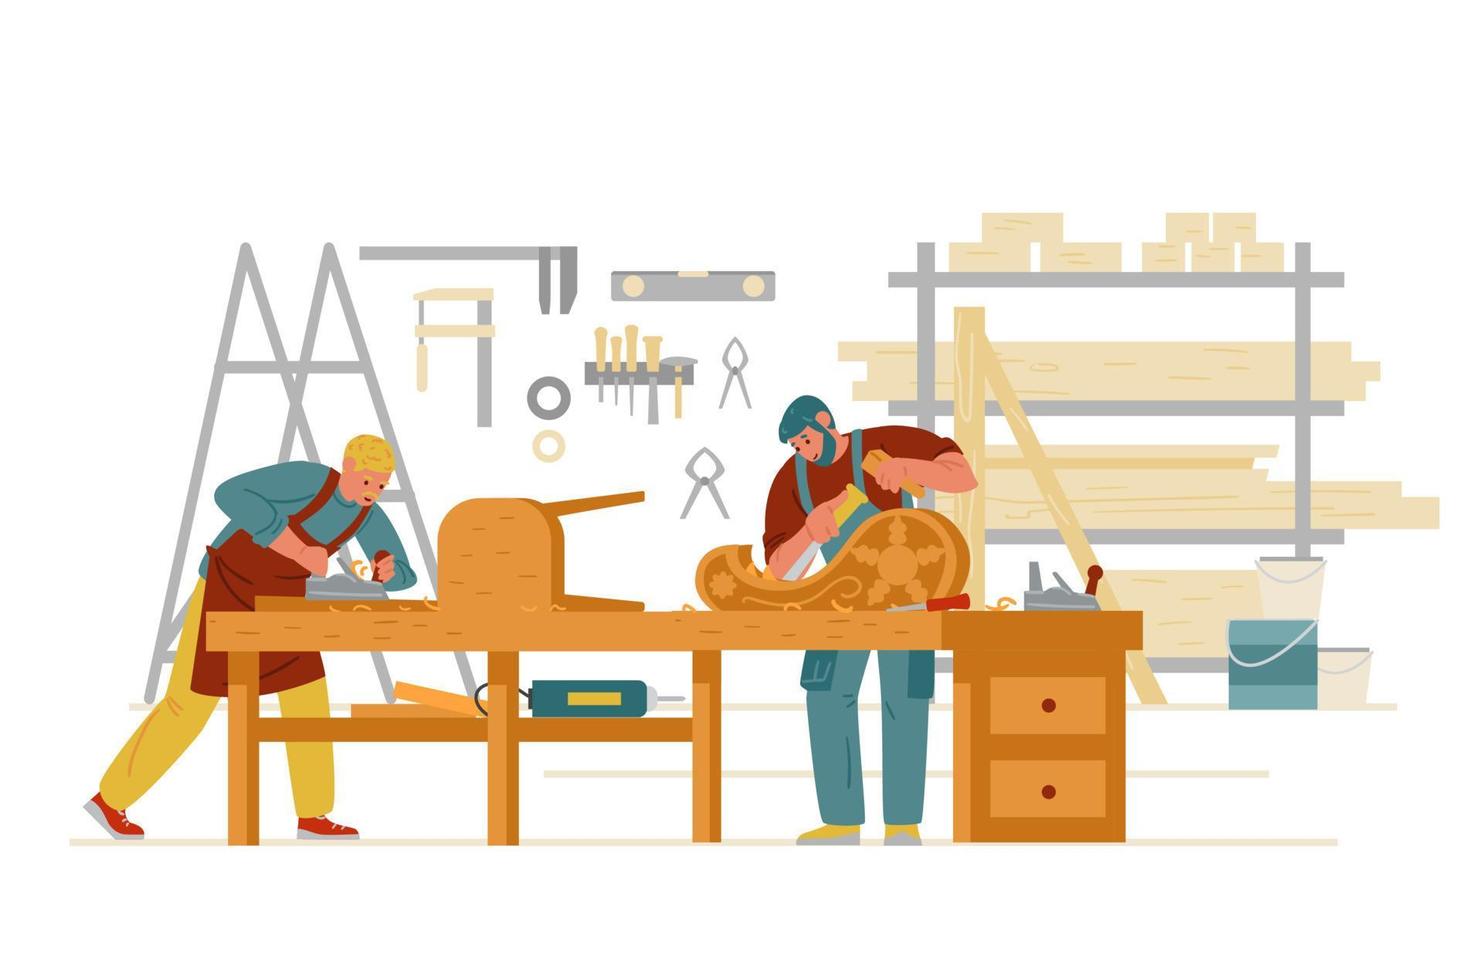 intérieur de l'atelier de charpentier avec des hommes travaillant. sculpture sur bois, fabrication de meubles. caractères vectoriels plats d'artisan. vecteur